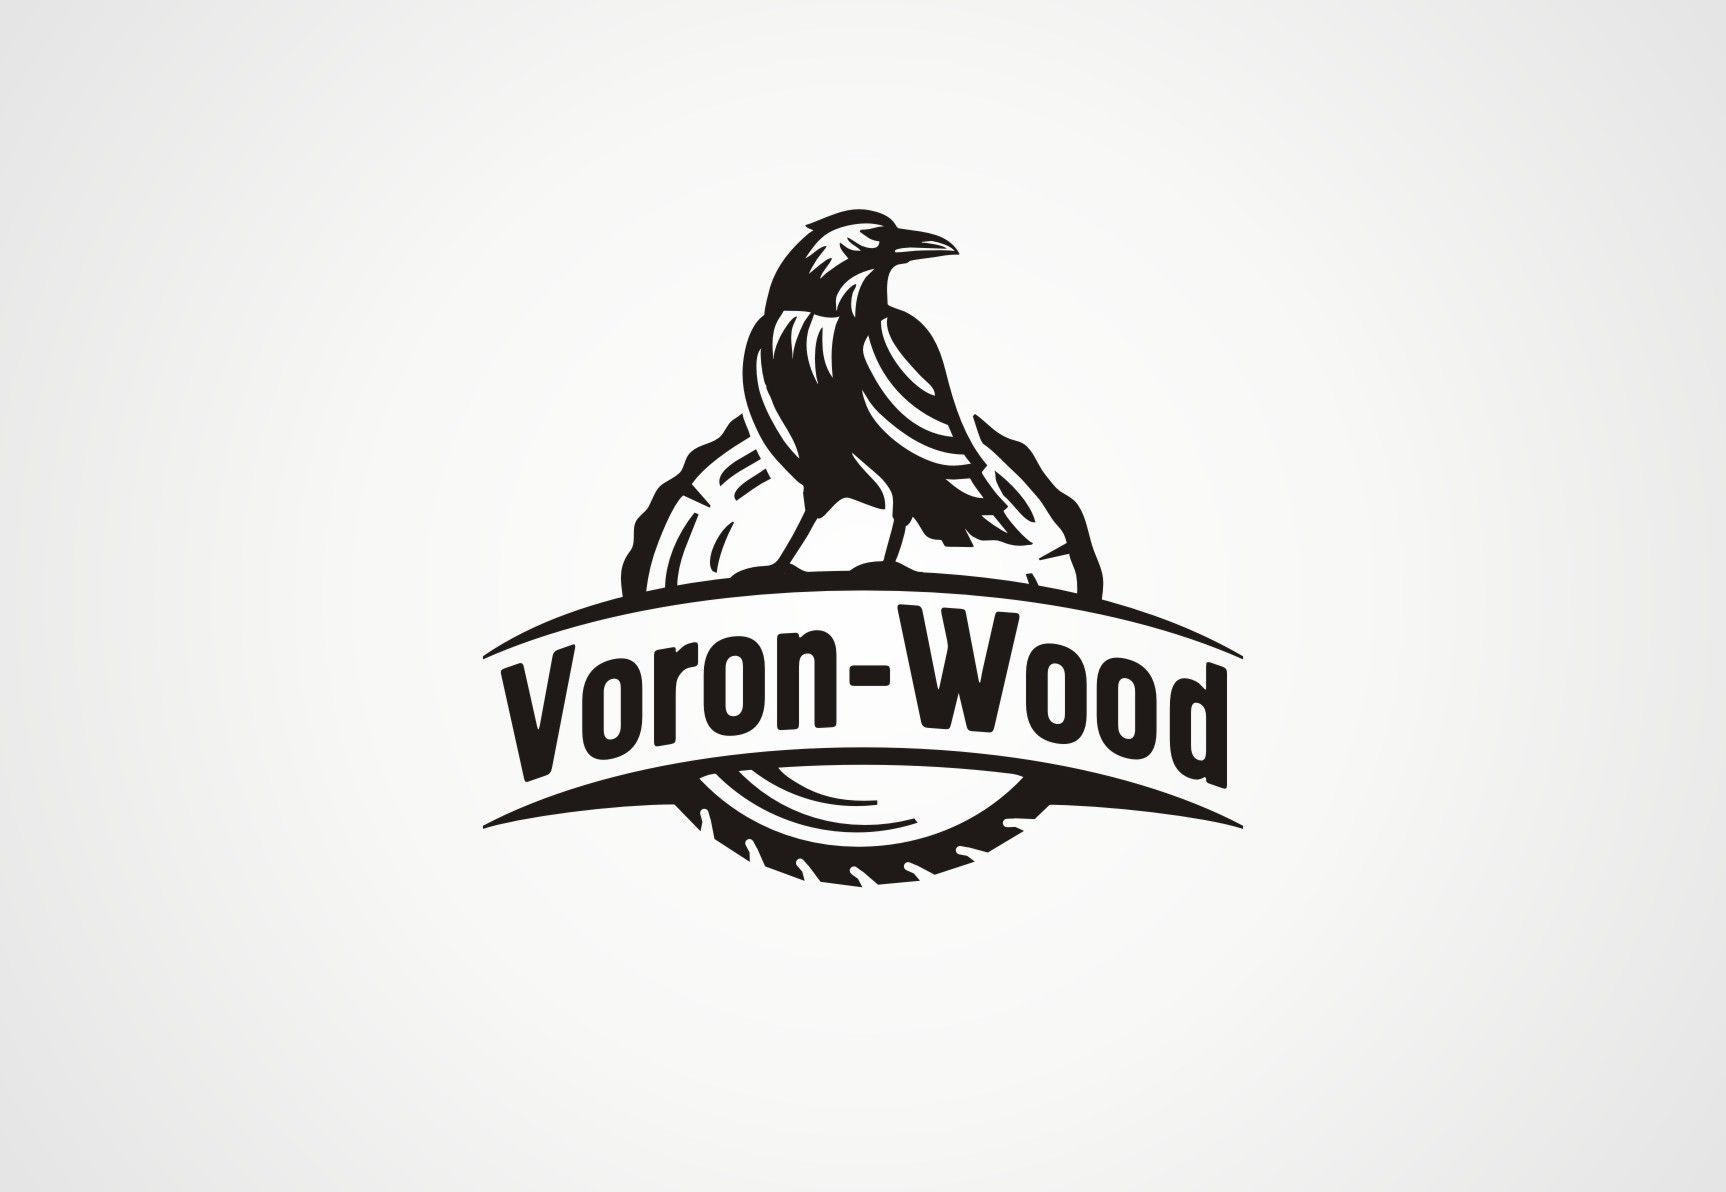 Логотип для Voron-Wood - дизайнер Zheravin